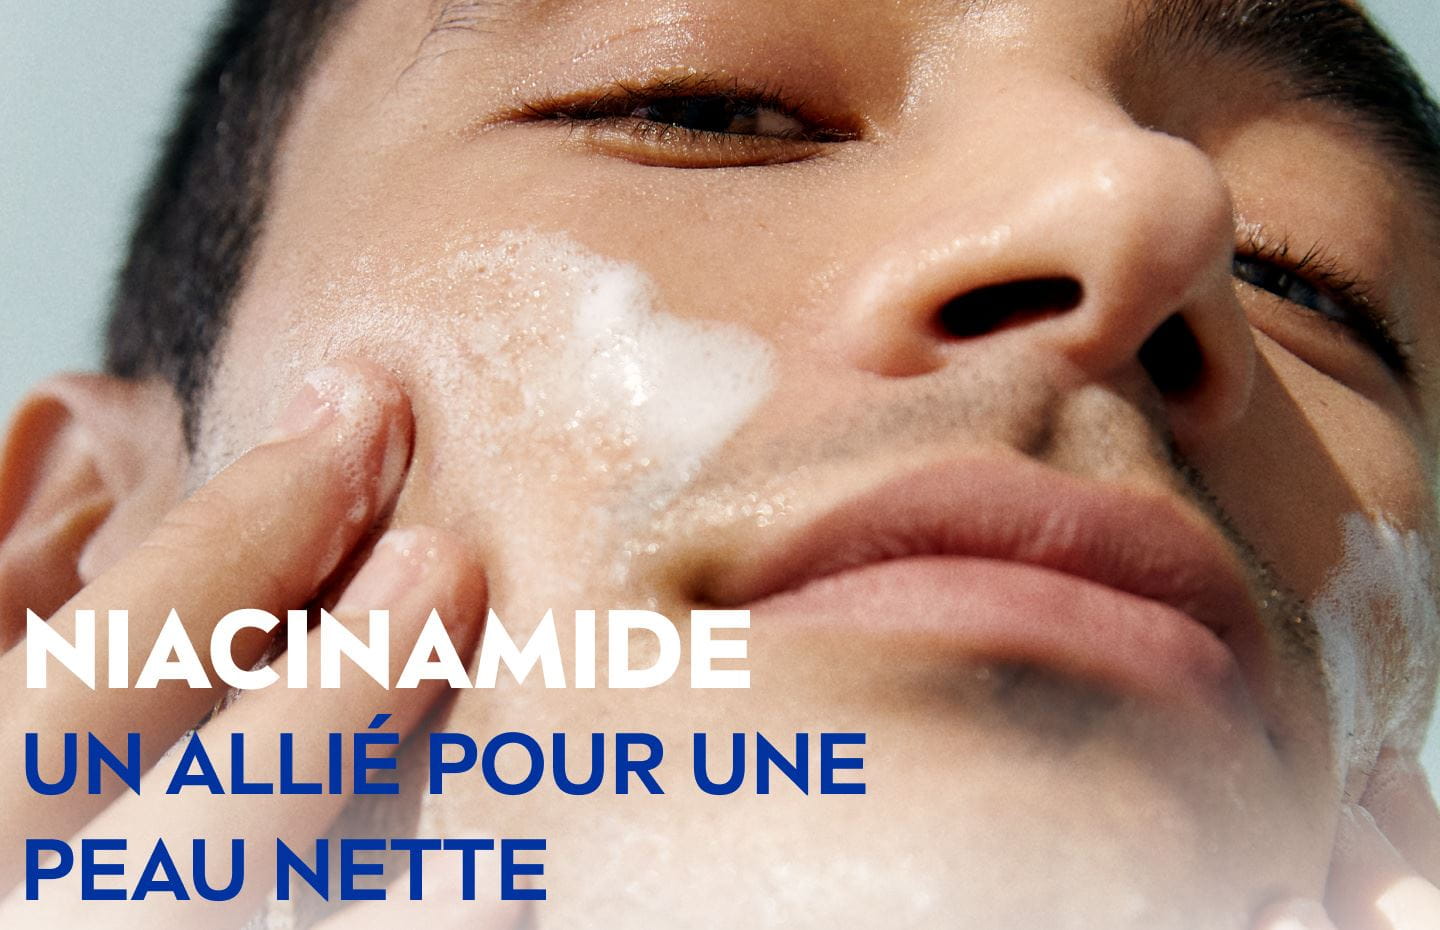 Niacinamide: Un allié pour une peau nette